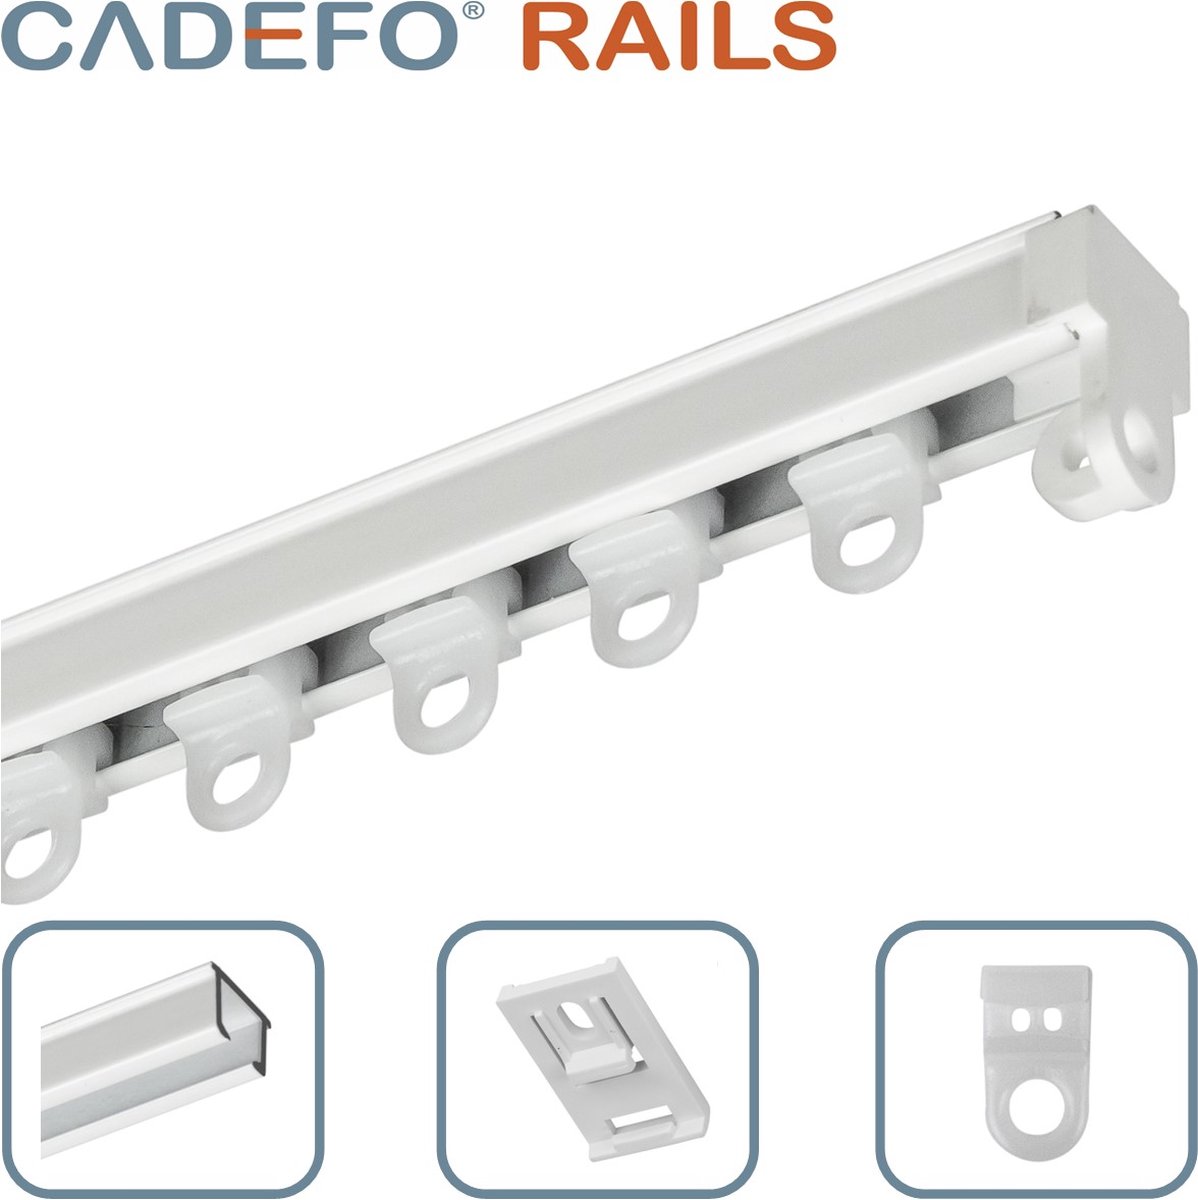 CADEFO RAILS (101 - 150 cm) Gordijnrails - Compleet op maat! - UIT 1 STUK - Leverbaar tot 6 meter - Plafondbevestiging - Lengte 137 cm